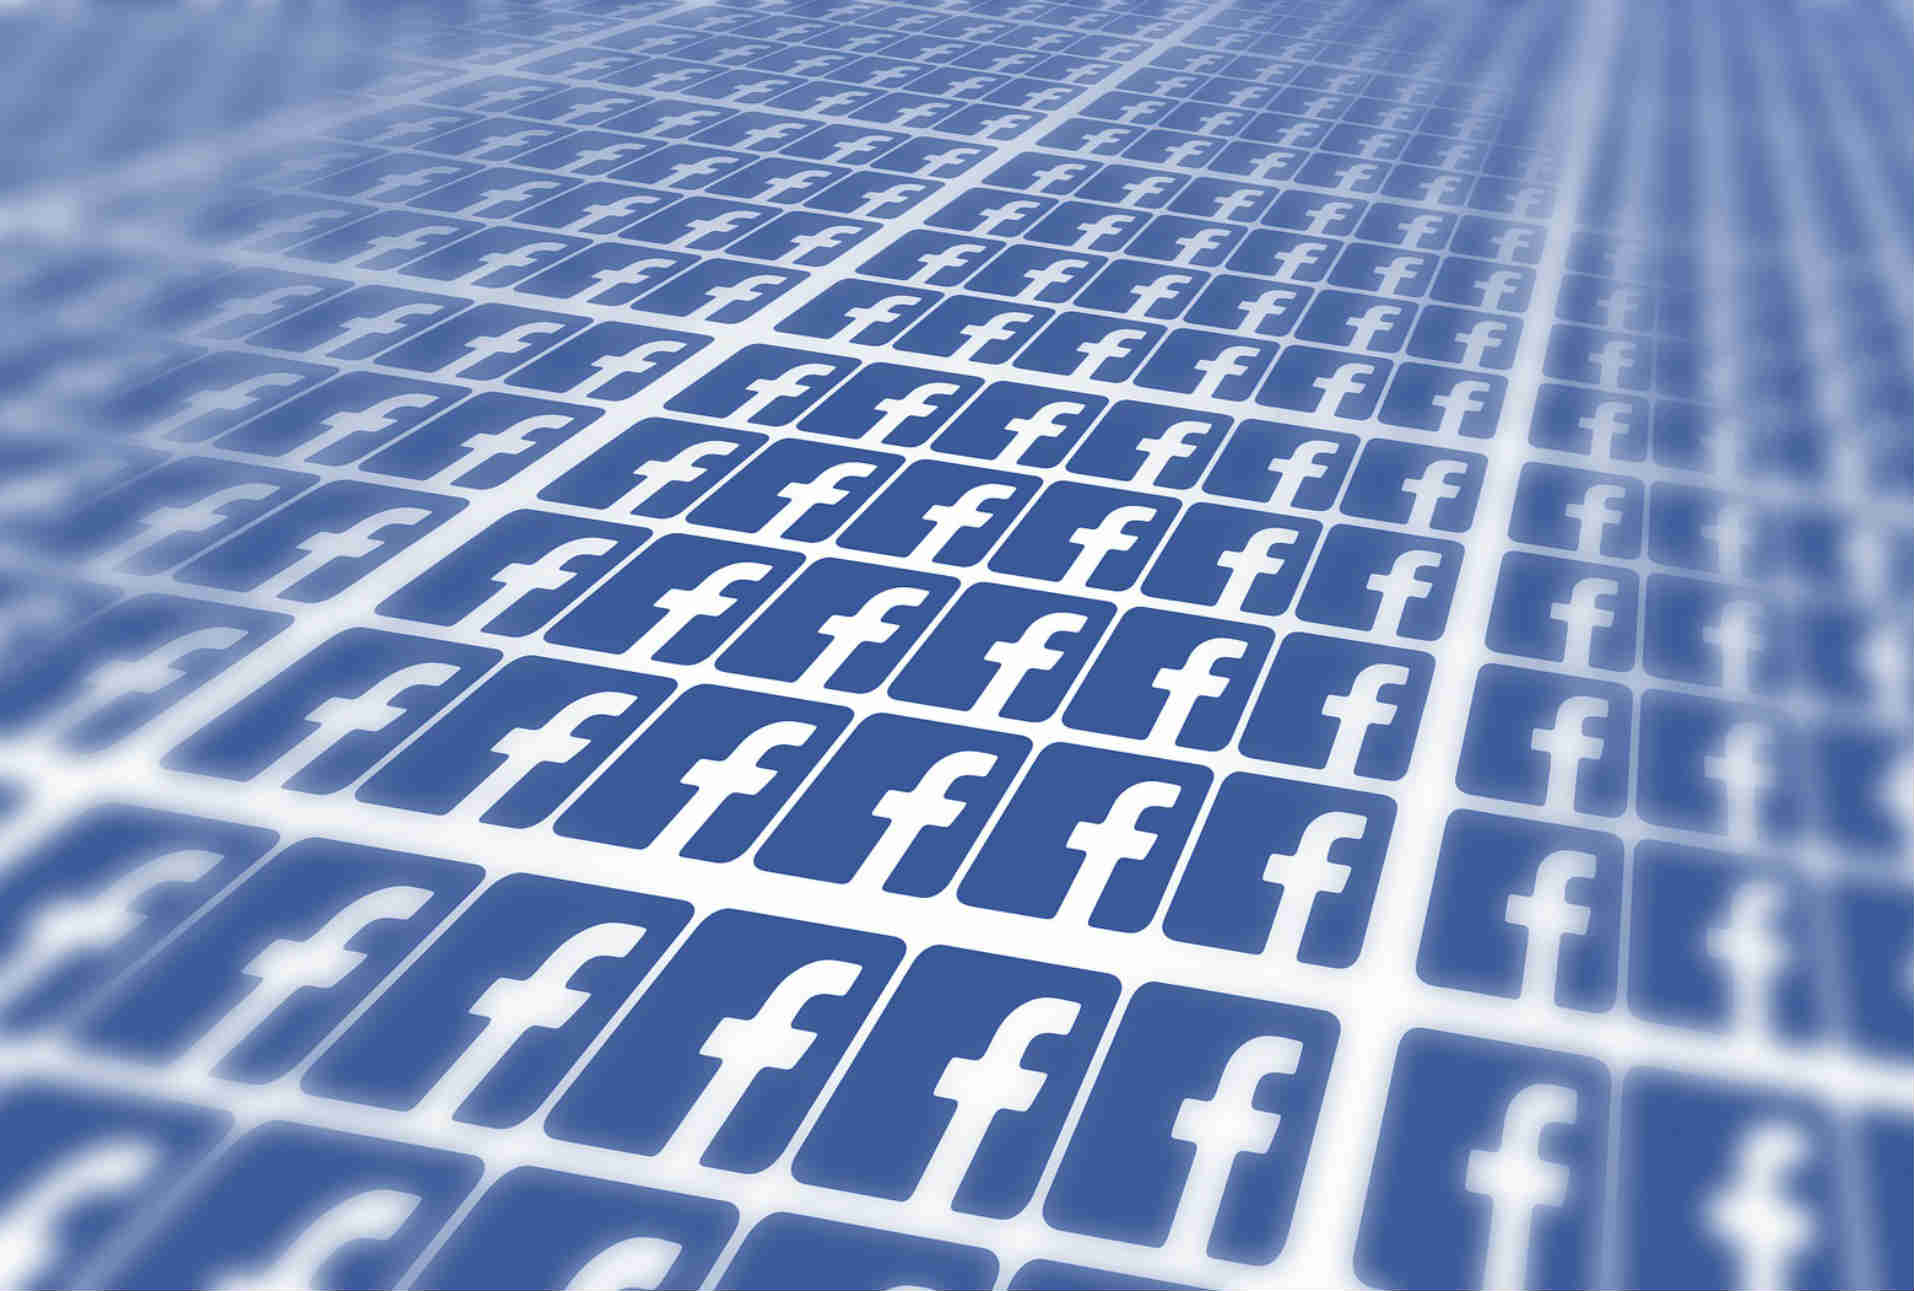 Facebook enfrenta acusaciones sobre censura y parcialidad en su selección de noticias